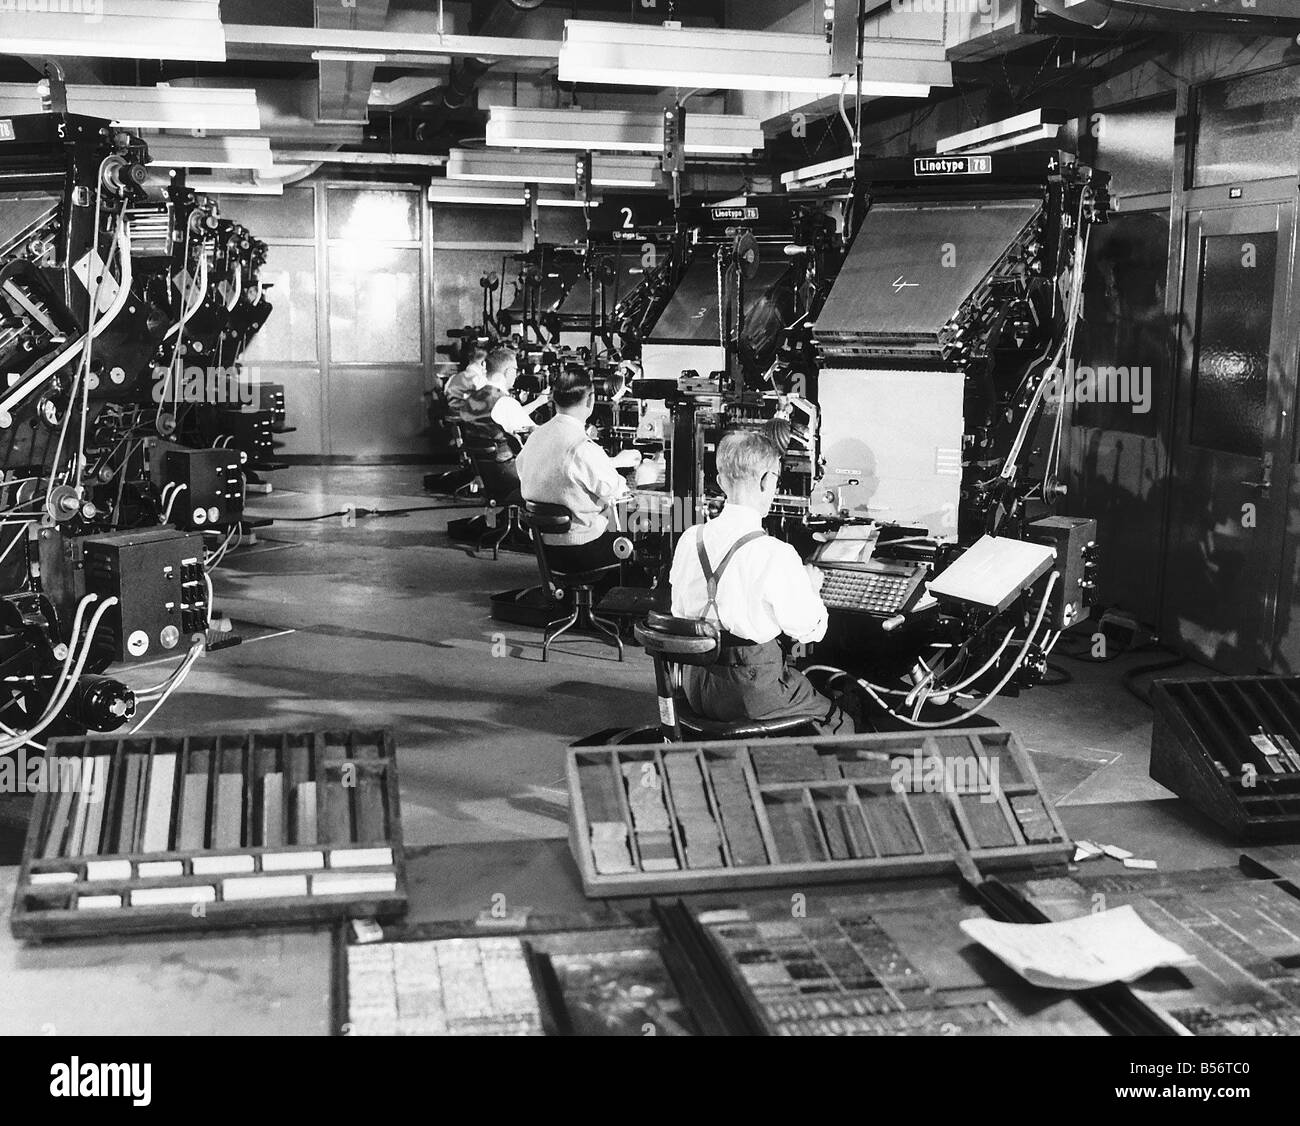 Les bureaux du Daily Mirror Bouverie Street Londres chambre Type vers 1920 Banque D'Images